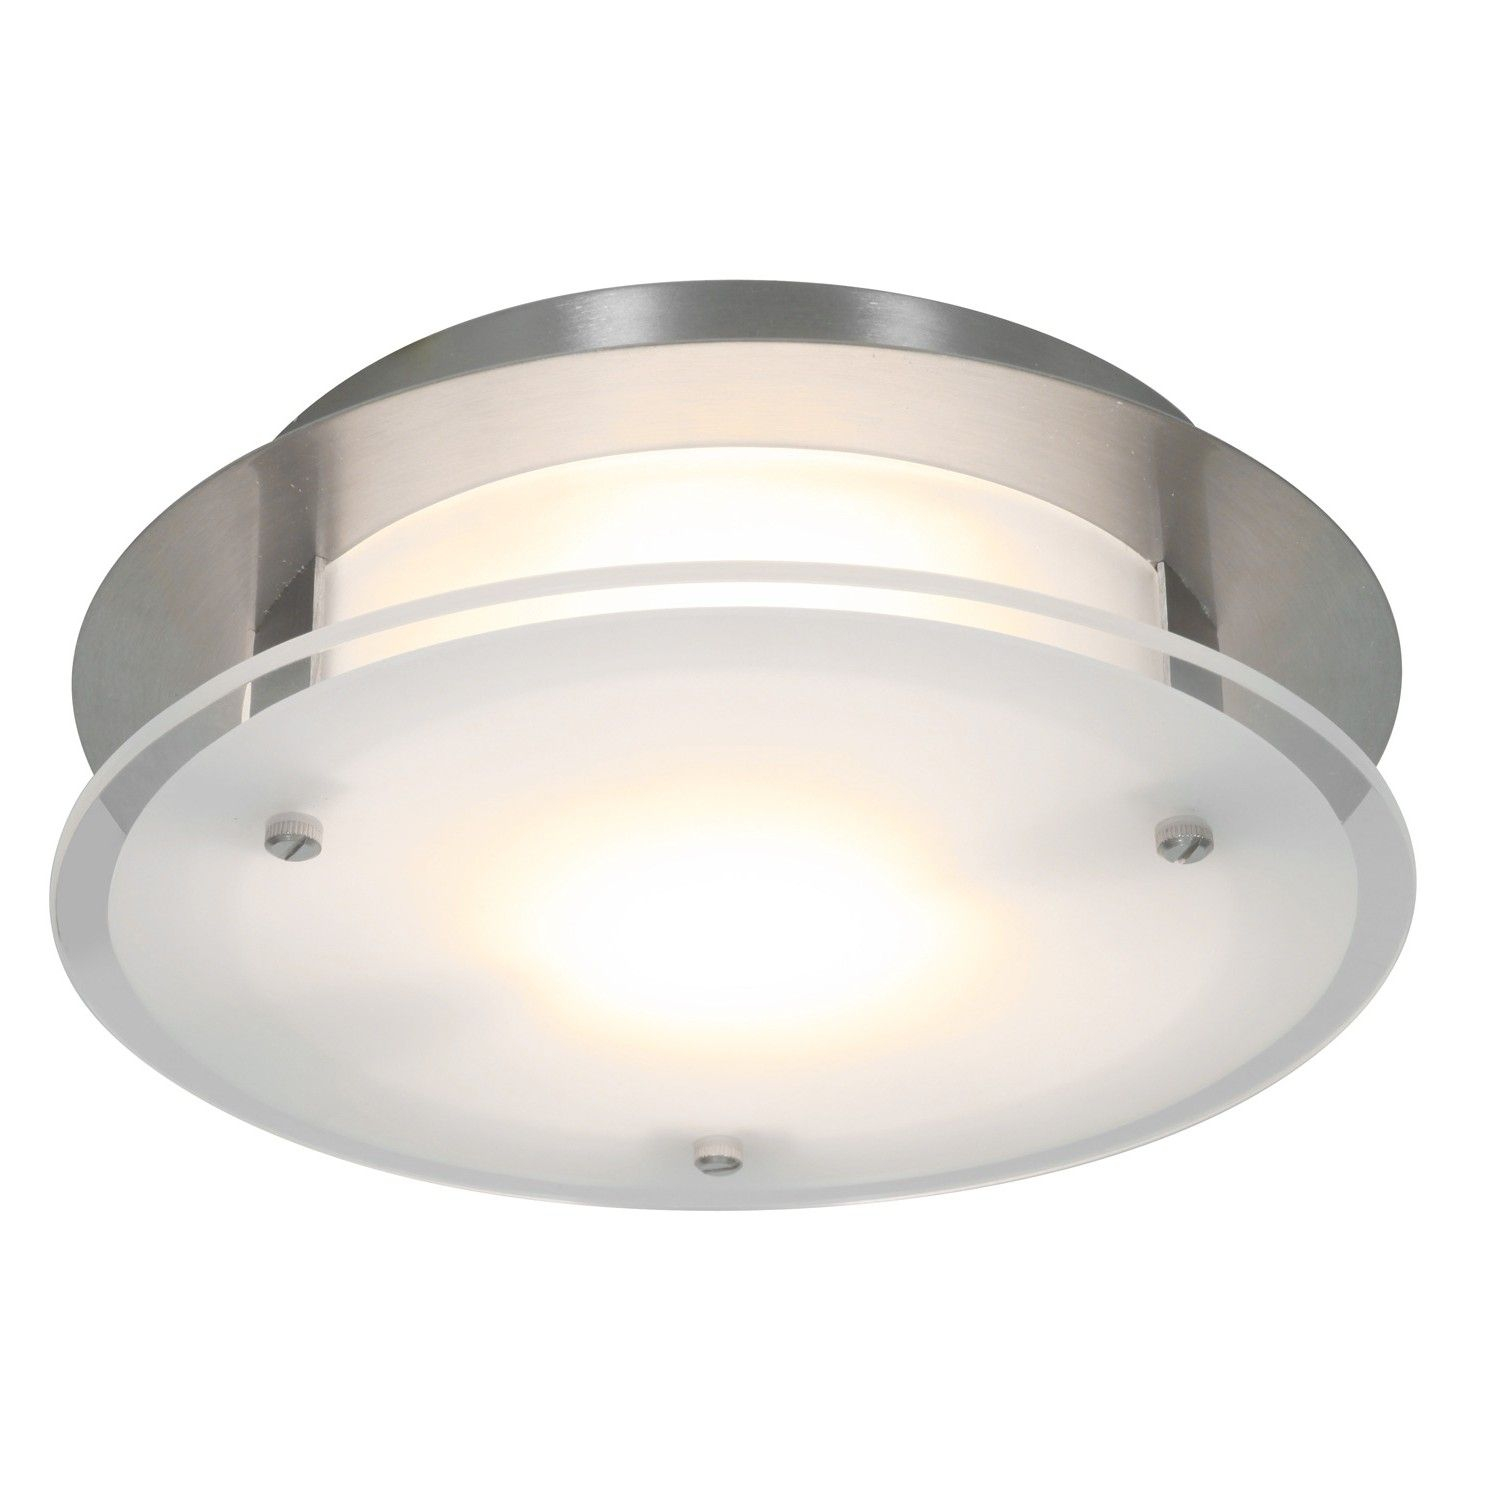 Luxury Ductless Bathroom Fan With Light Bathroom Fan Light inside proportions 1500 X 1500